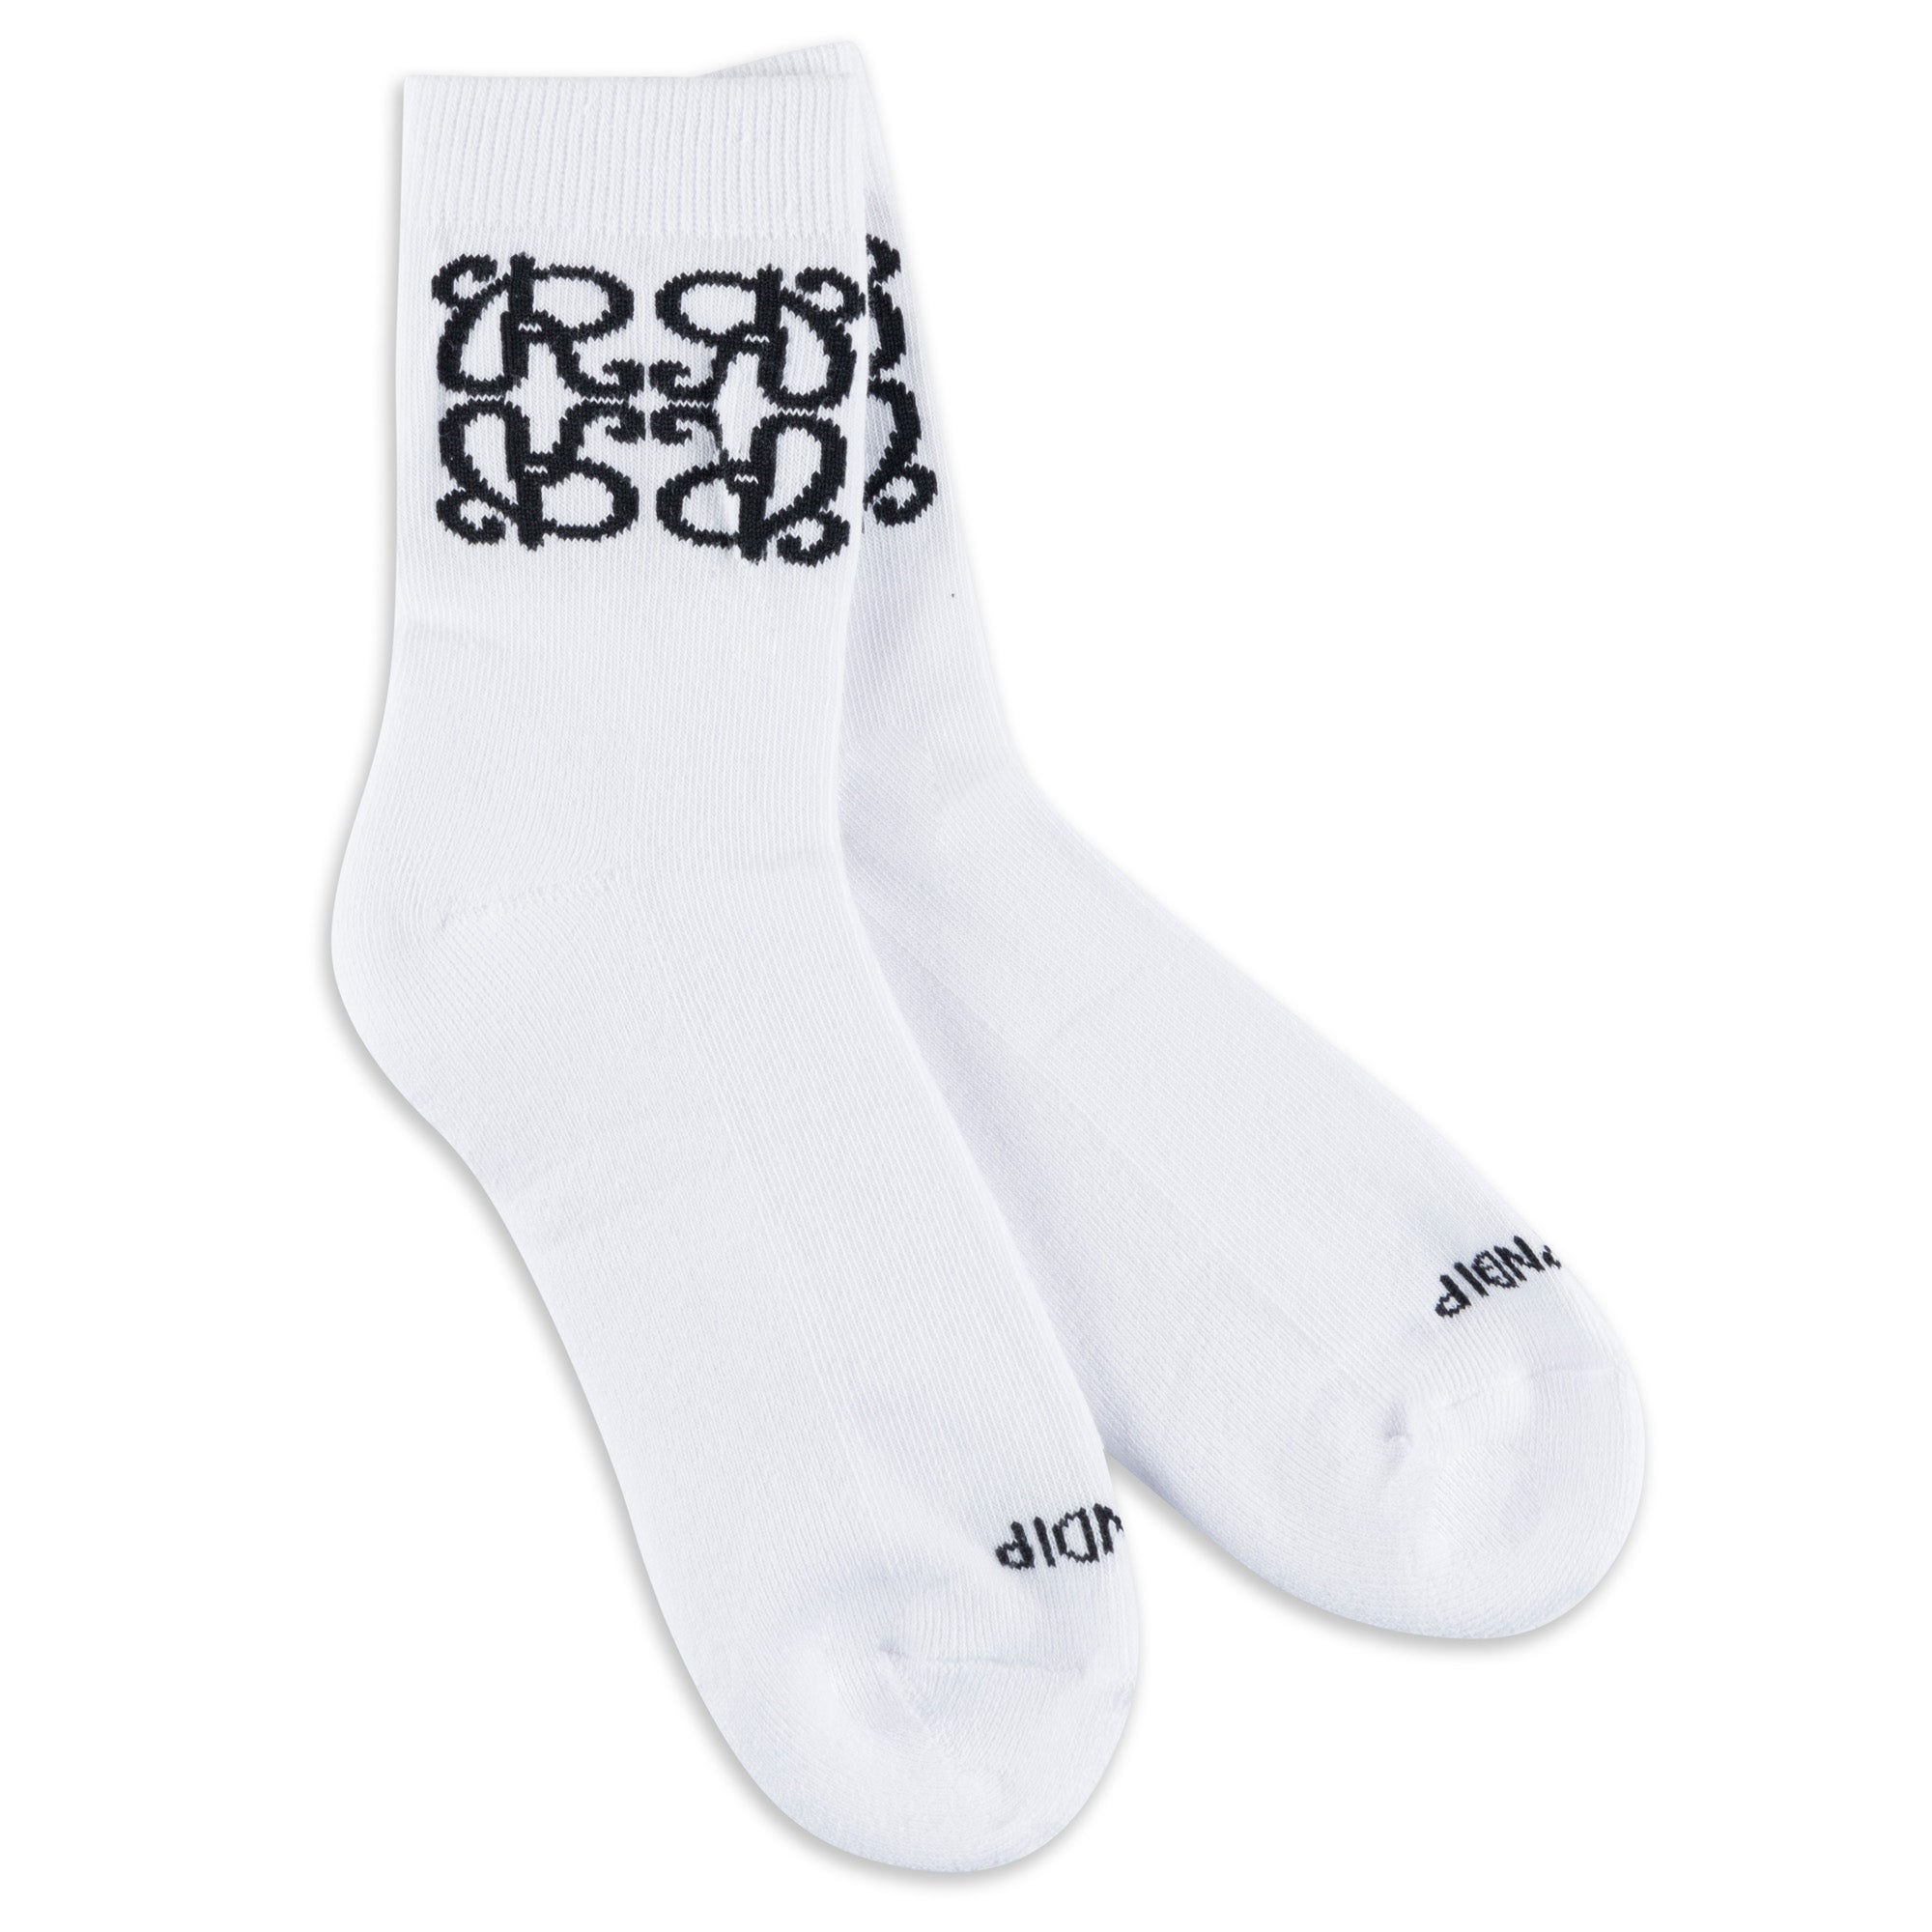 RIPNDIP Ranagram Mid Socks (White)